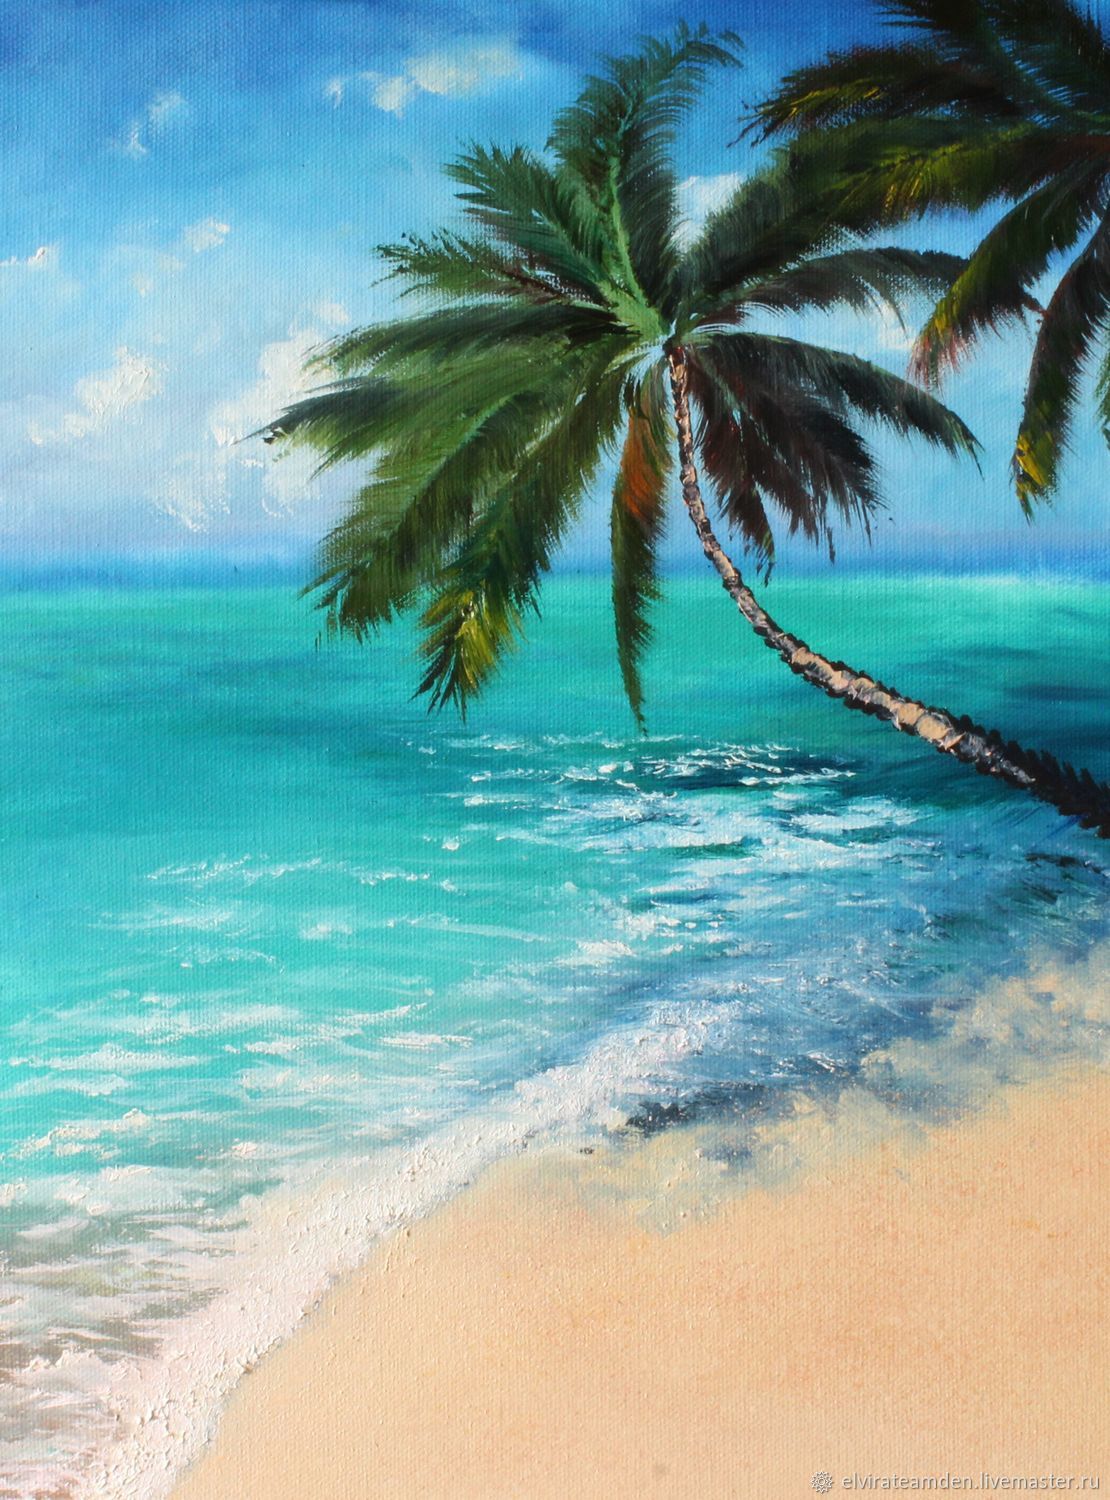 Летнее время, море с лодкой оригами, пляж и кокосовая пальма, стиль бумажного искусства